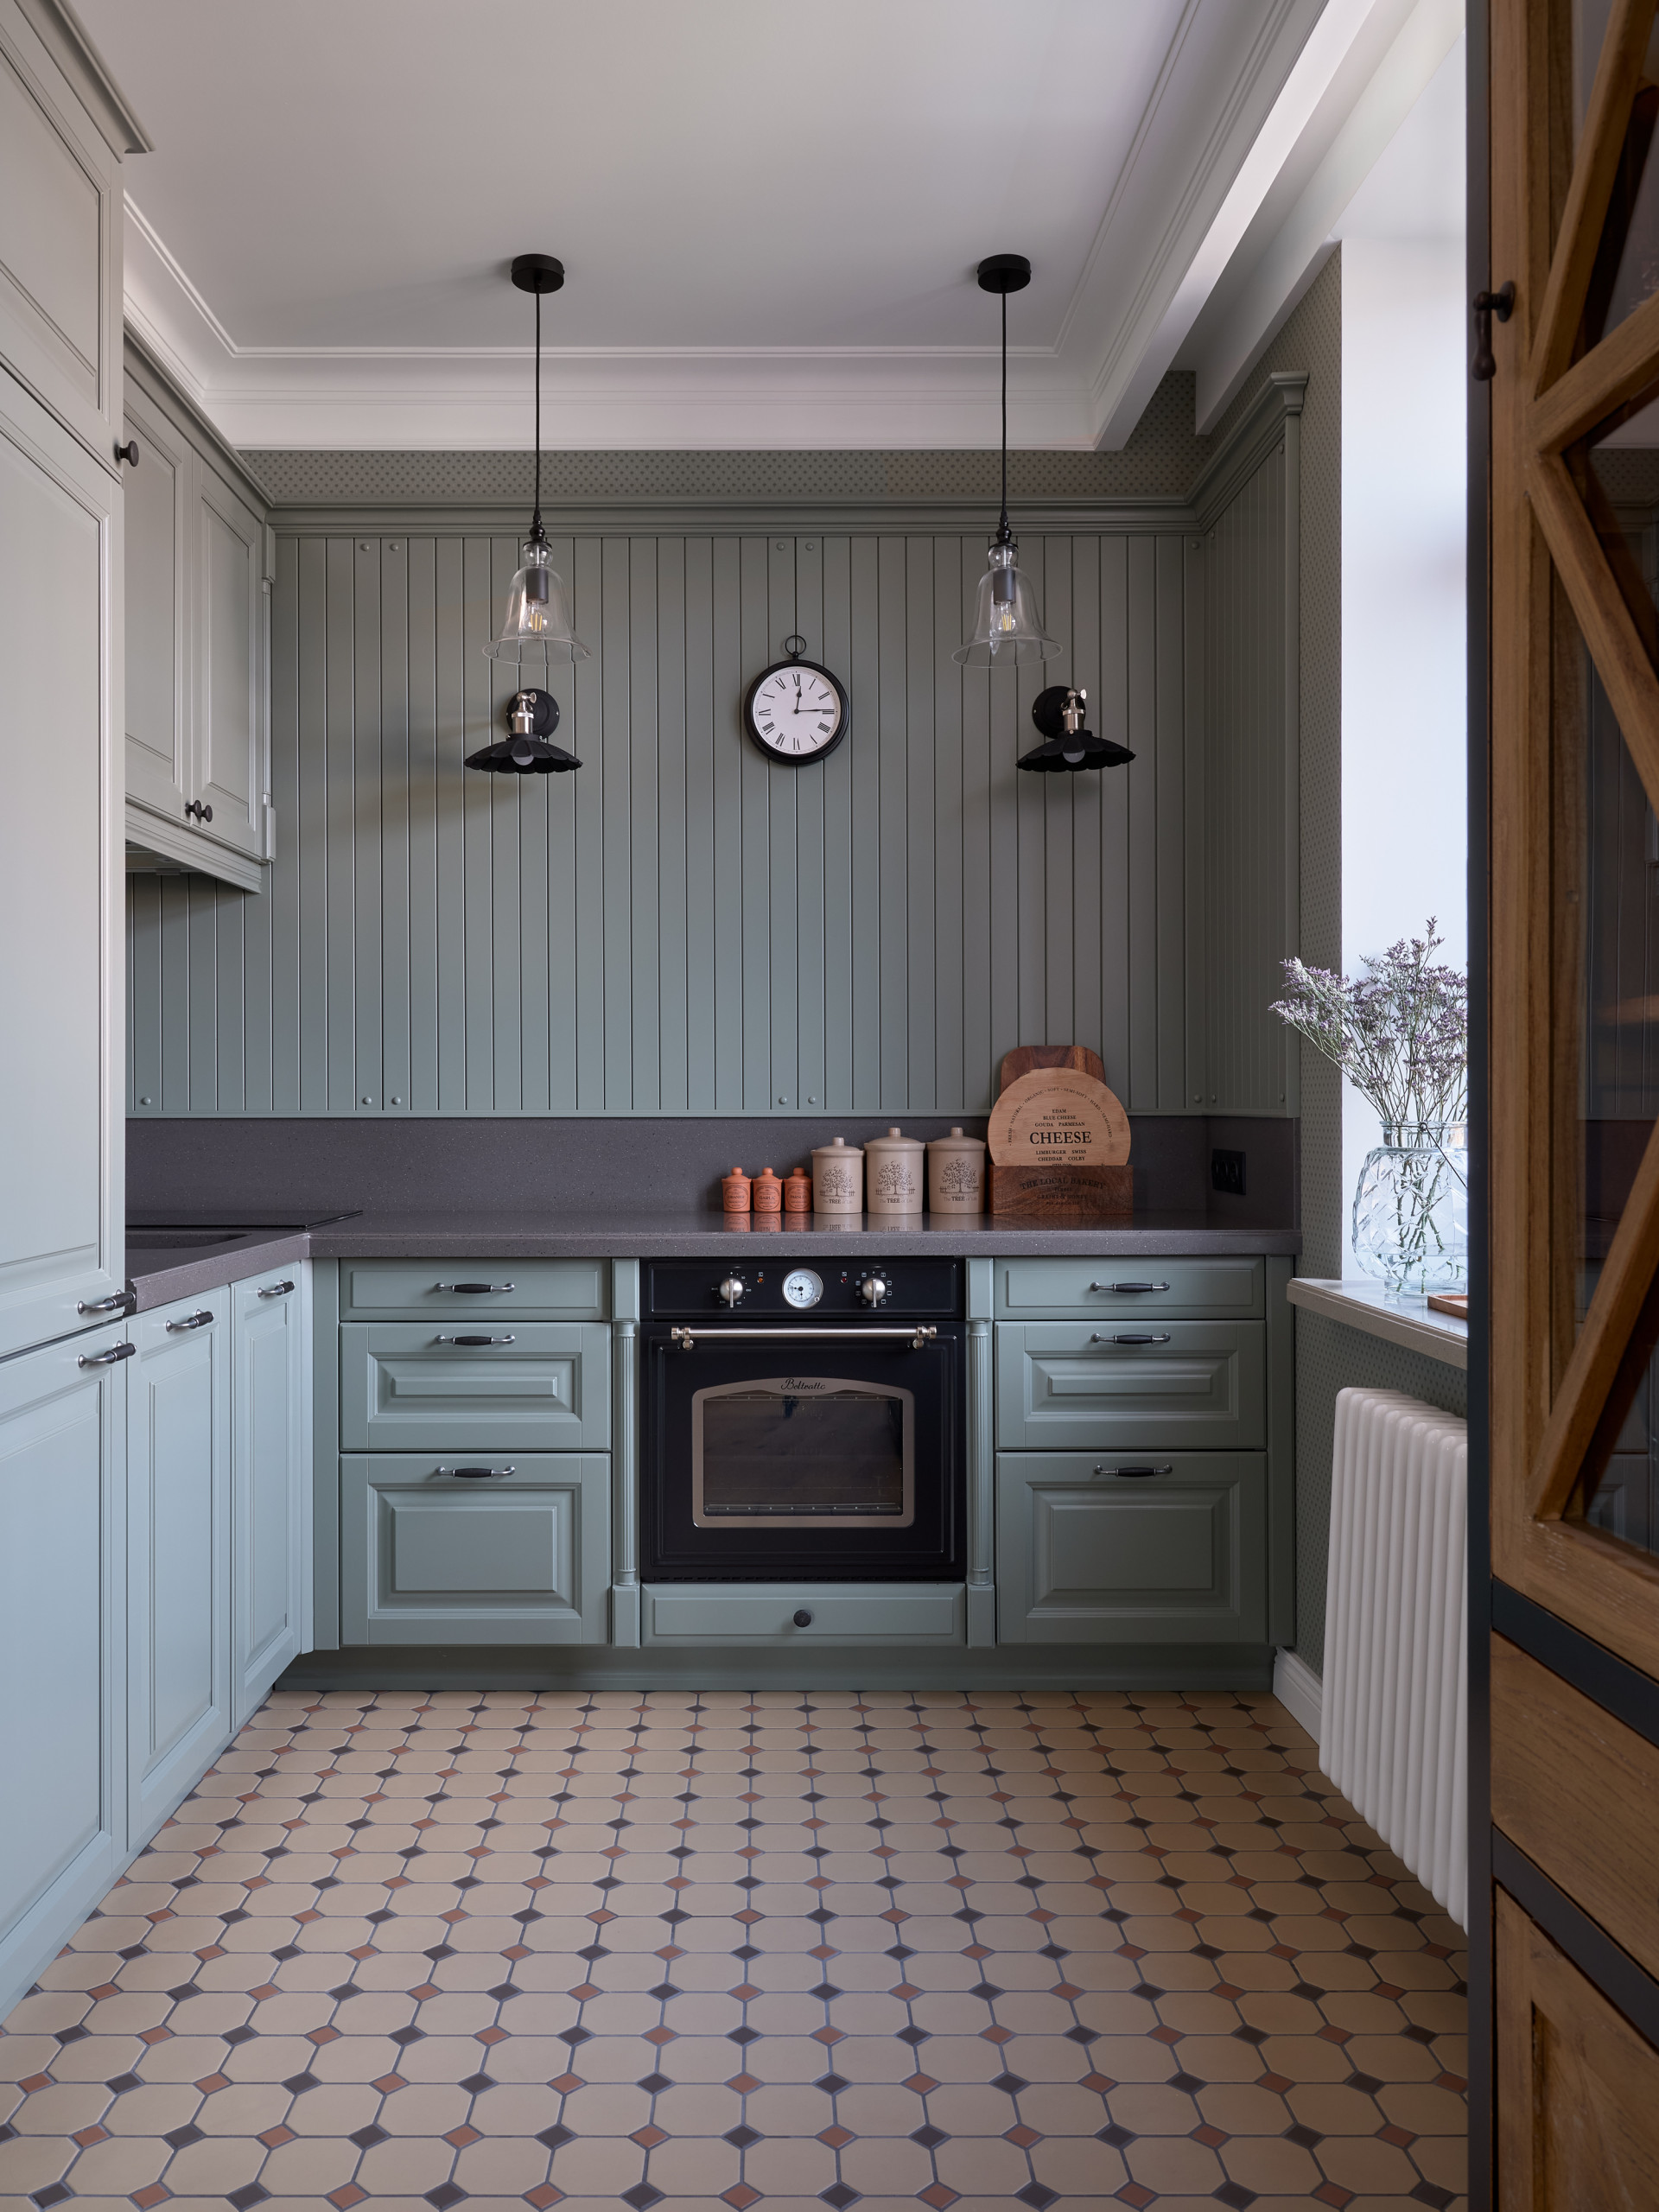 Дизайн кухни в классическом стиле - 65 фото интерьеров